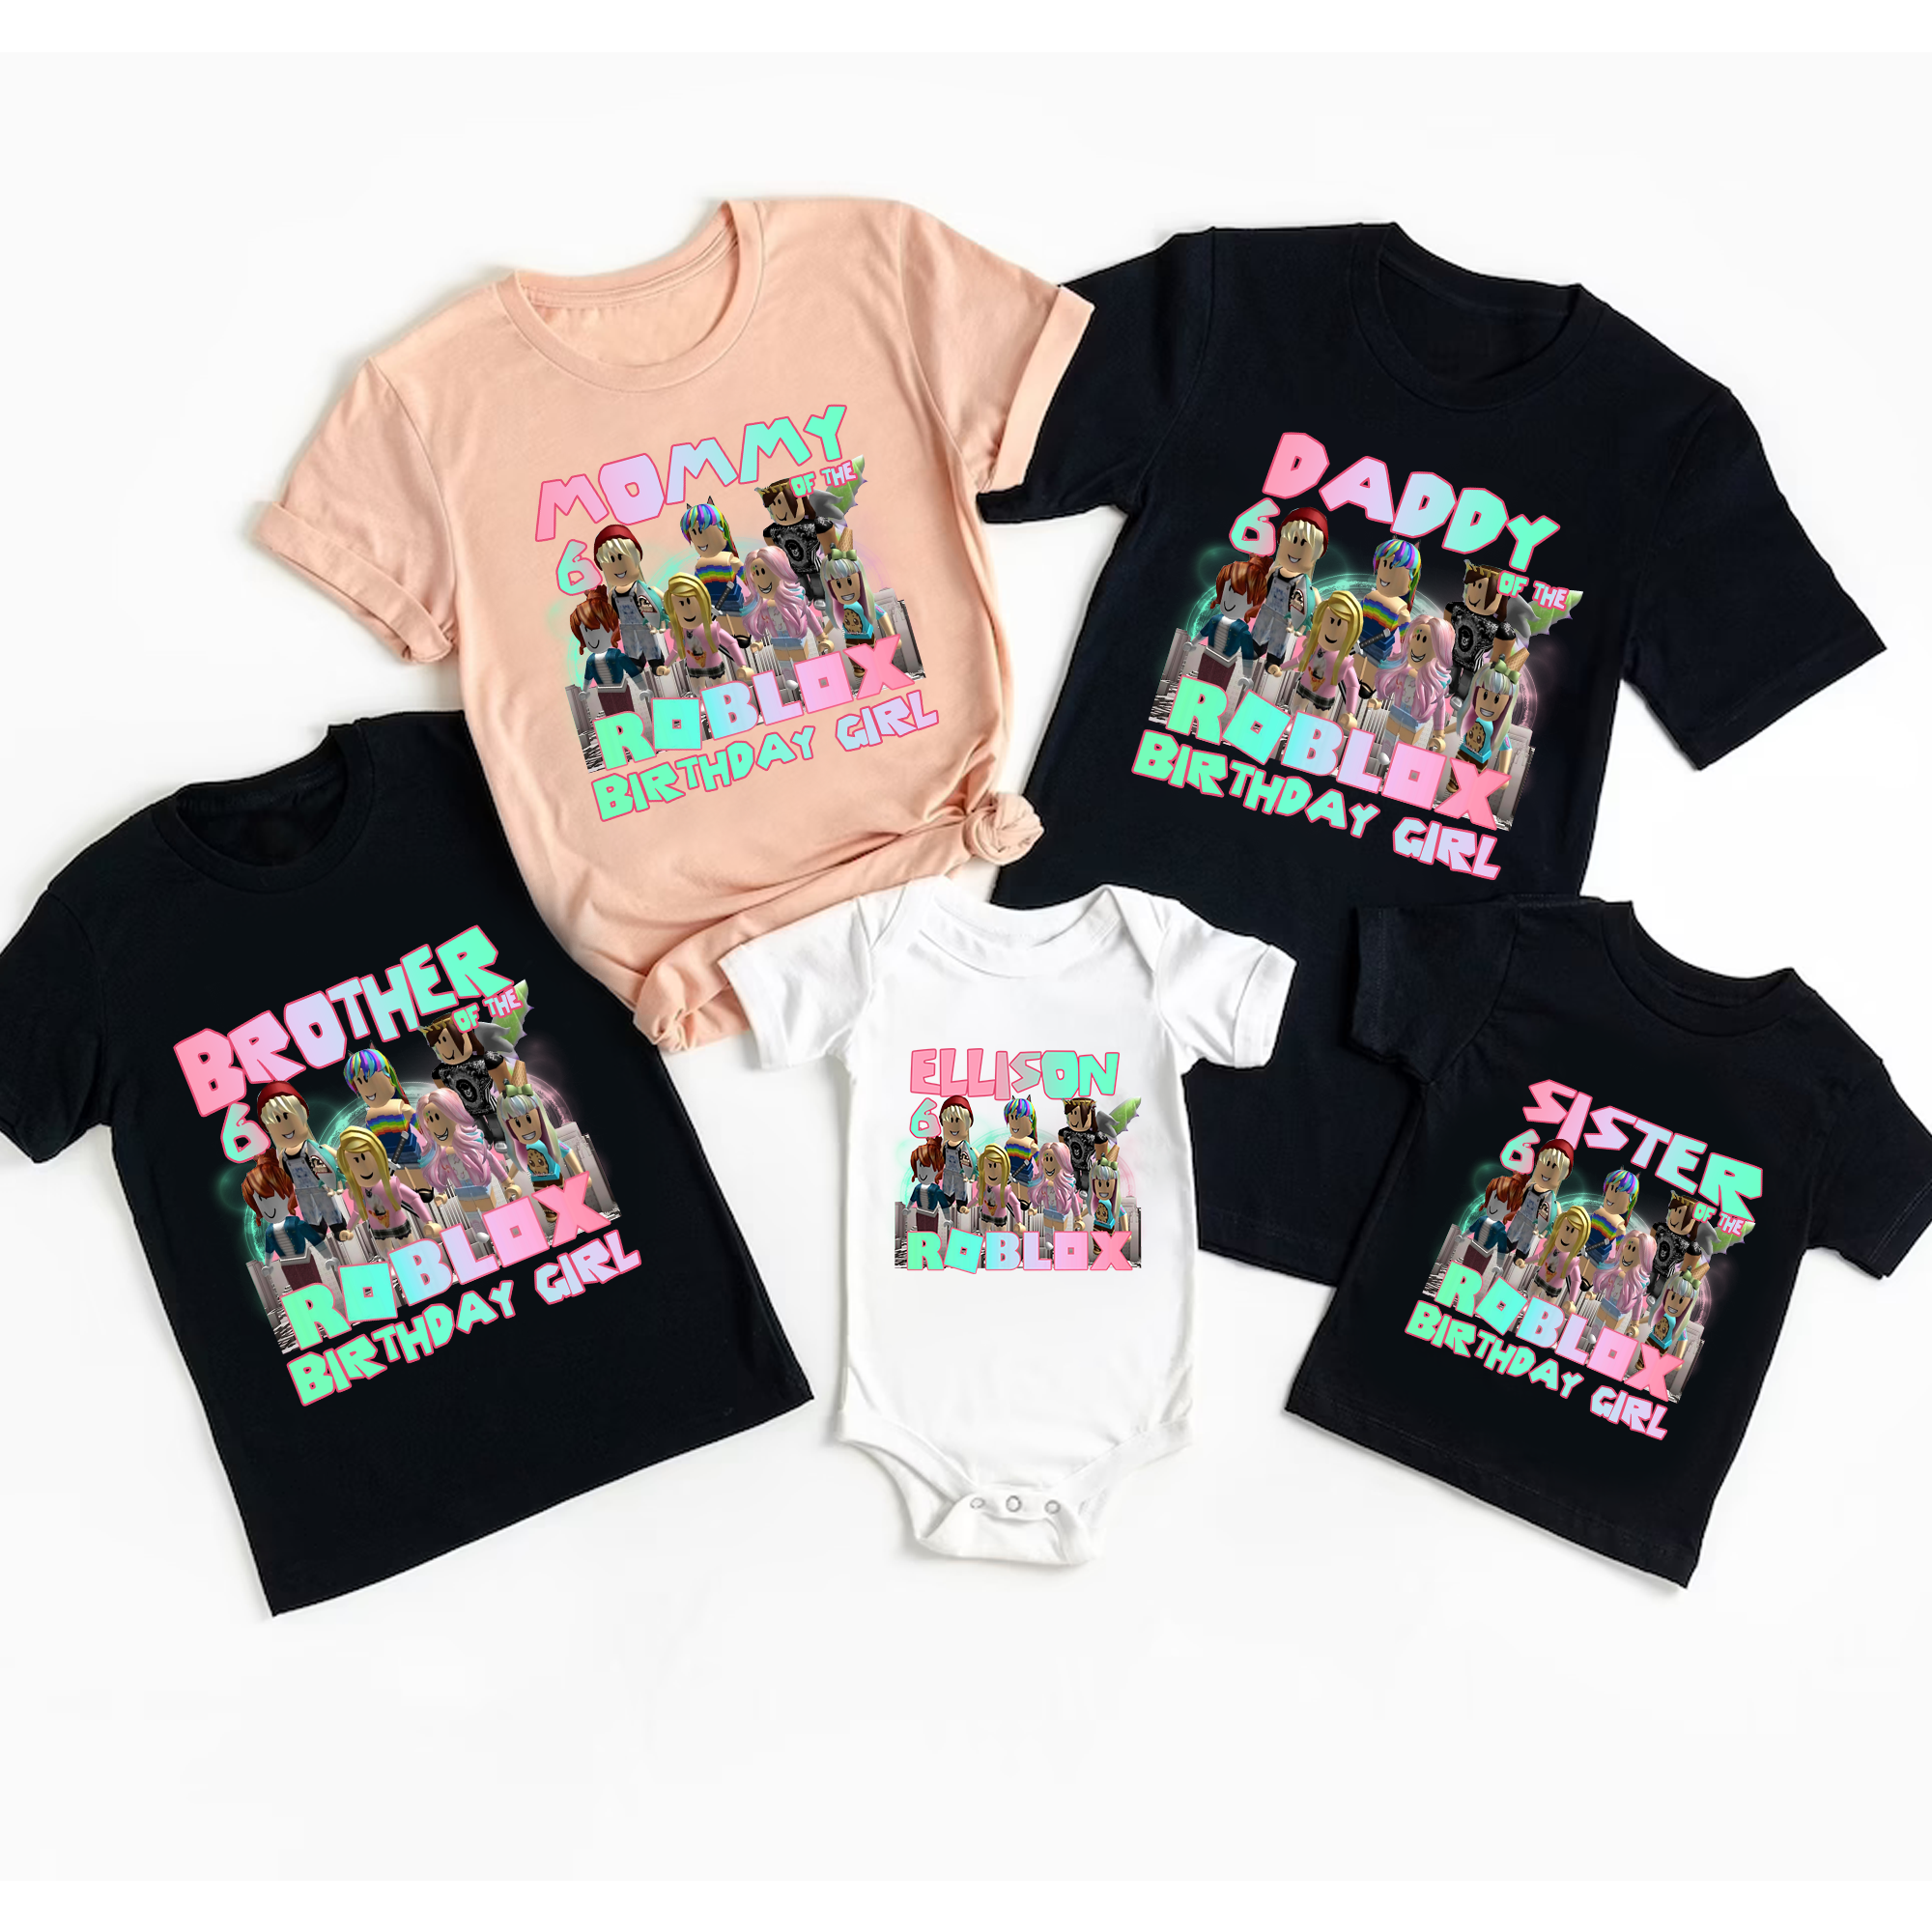 Roblox Birthday Girl Shirt, Roblox Birthday Girl Shirt Matching Family Shirt, Roblox Girl Shirt